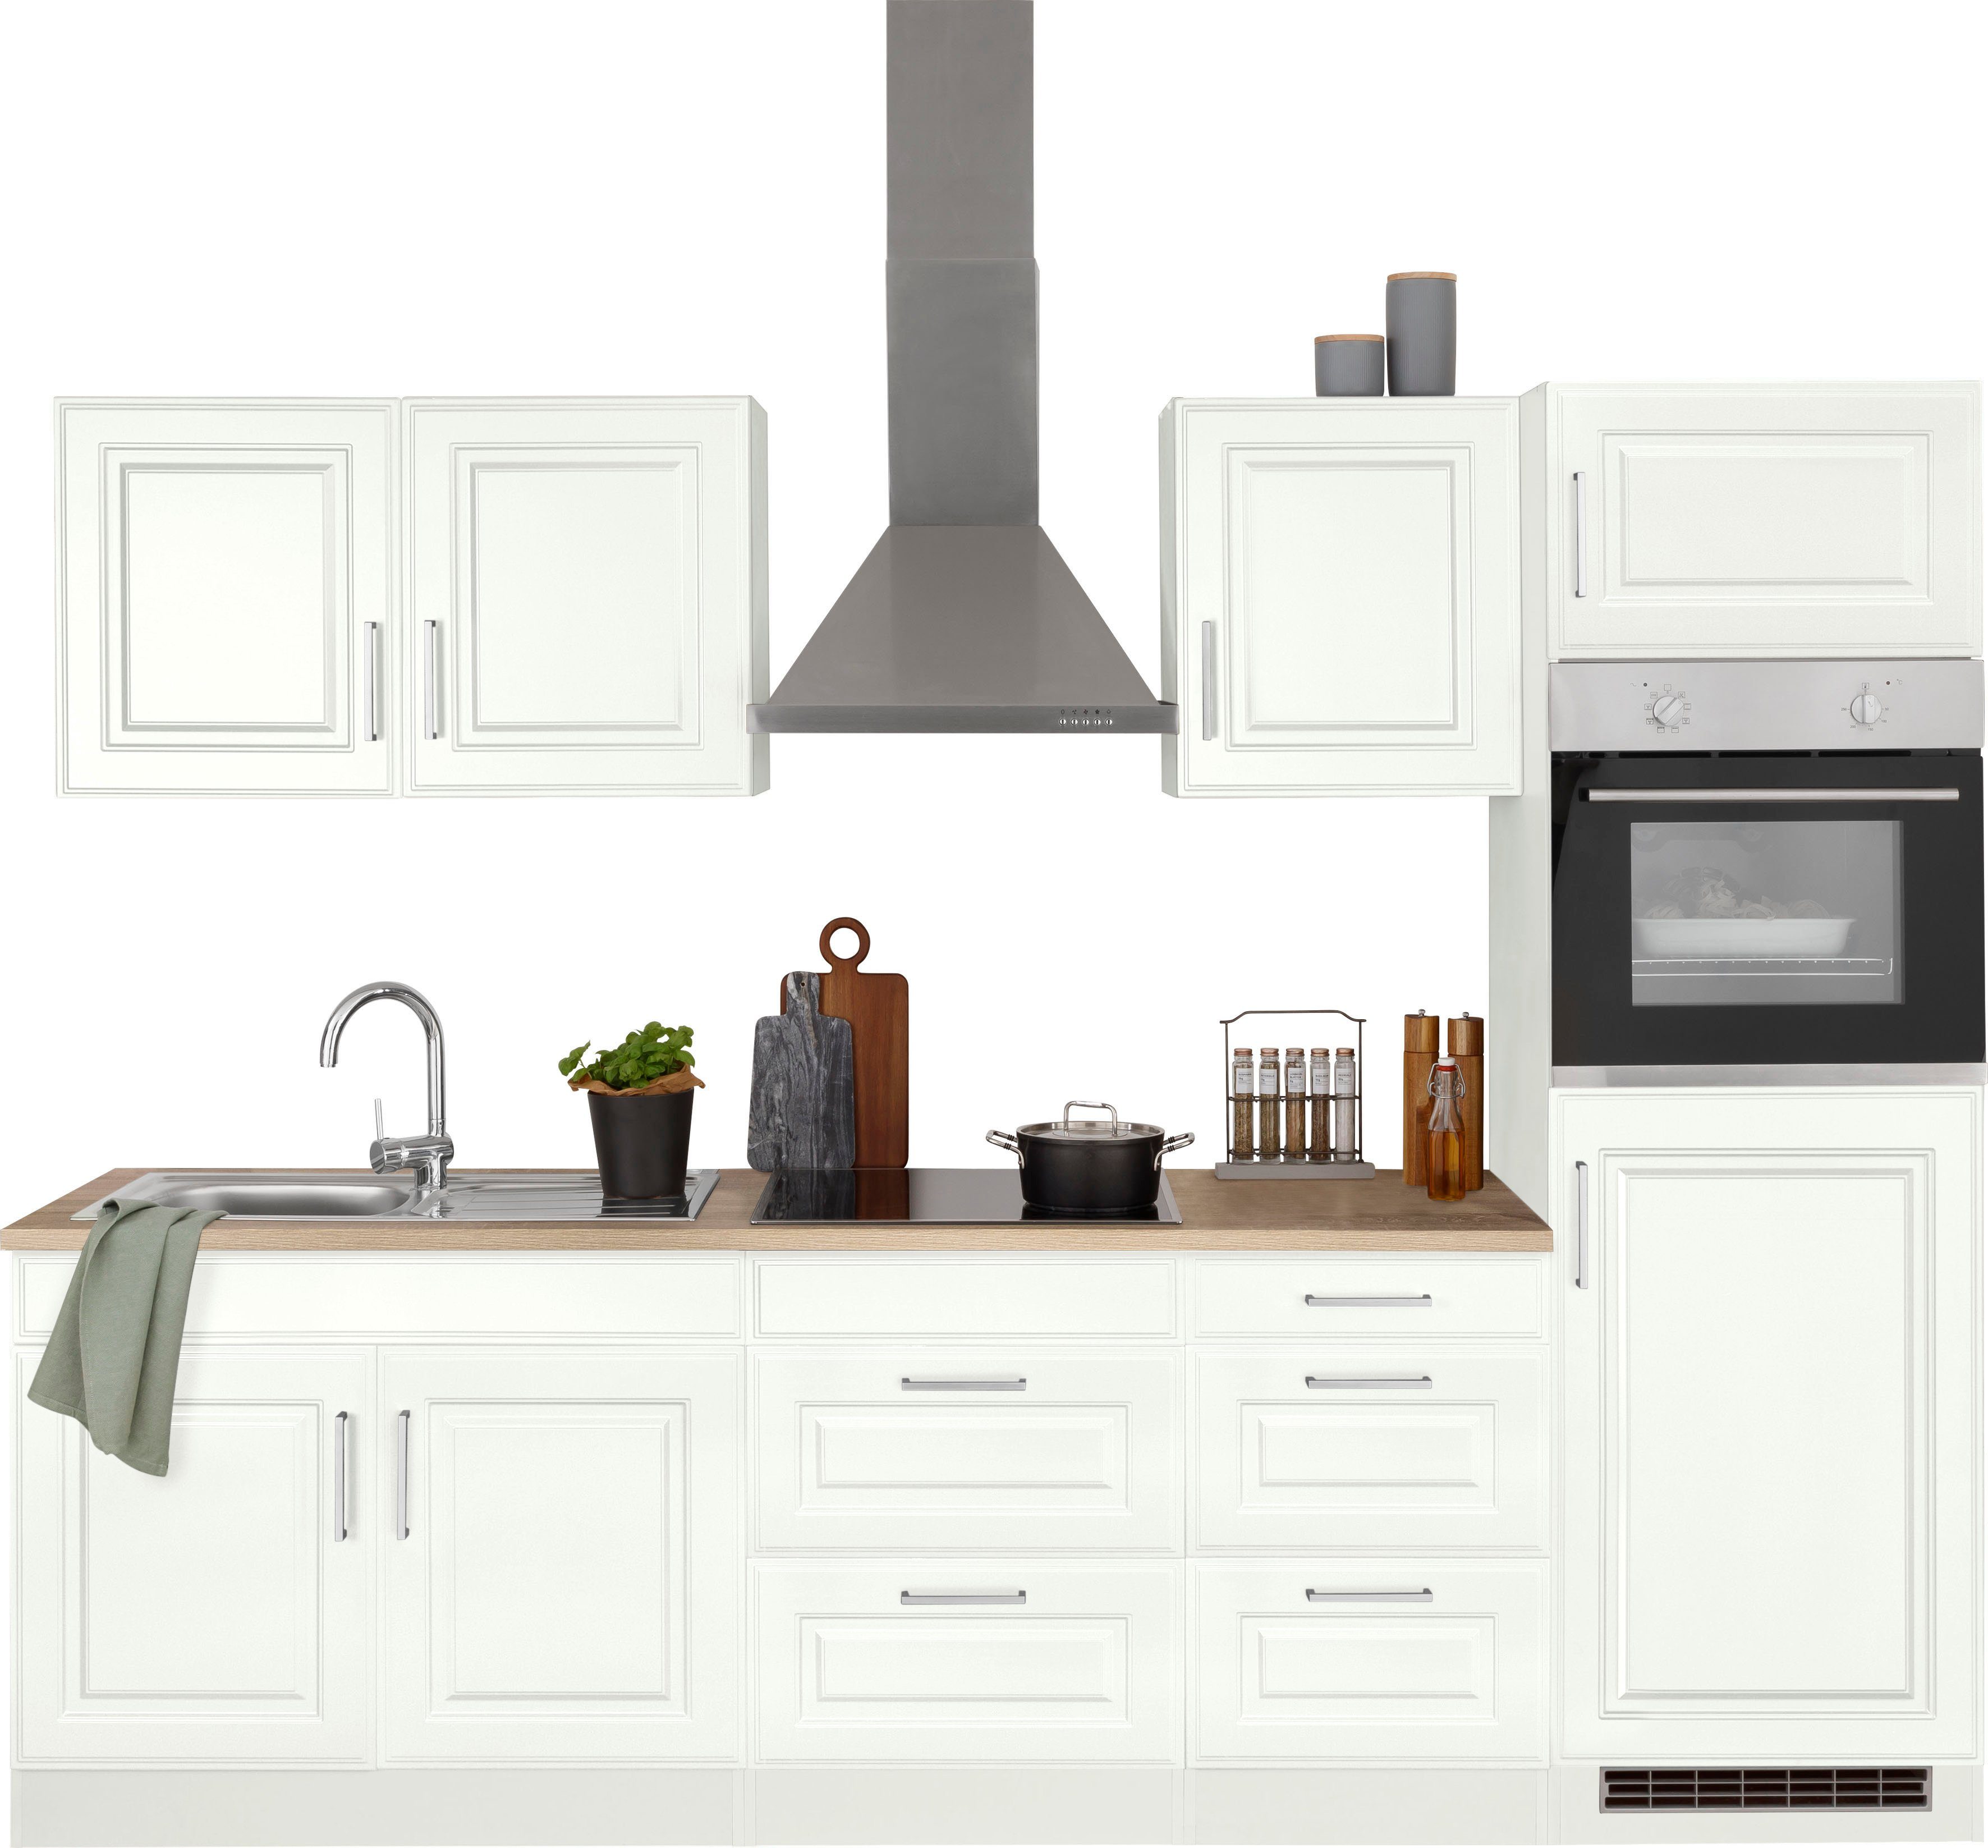 HELD MÖBEL Küchenzeile Stockholm, Breite 270 cm, mit hochwertigen MDF Fronten im Landhaus-Stil weiß